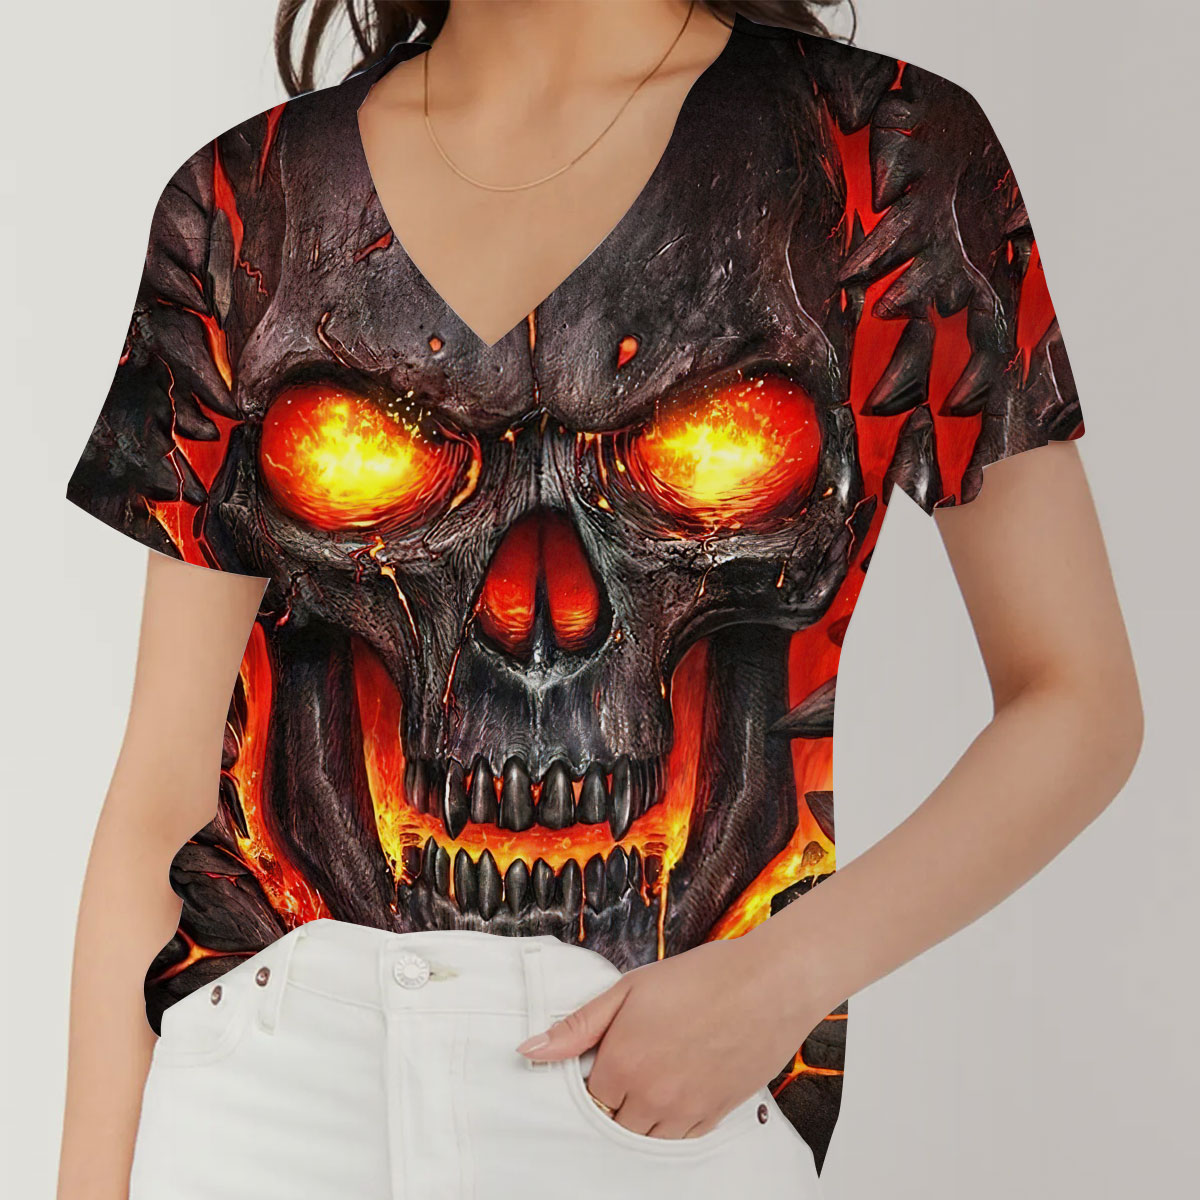 Fire Skull V-Neck Women's T-Shirt_1_2.1